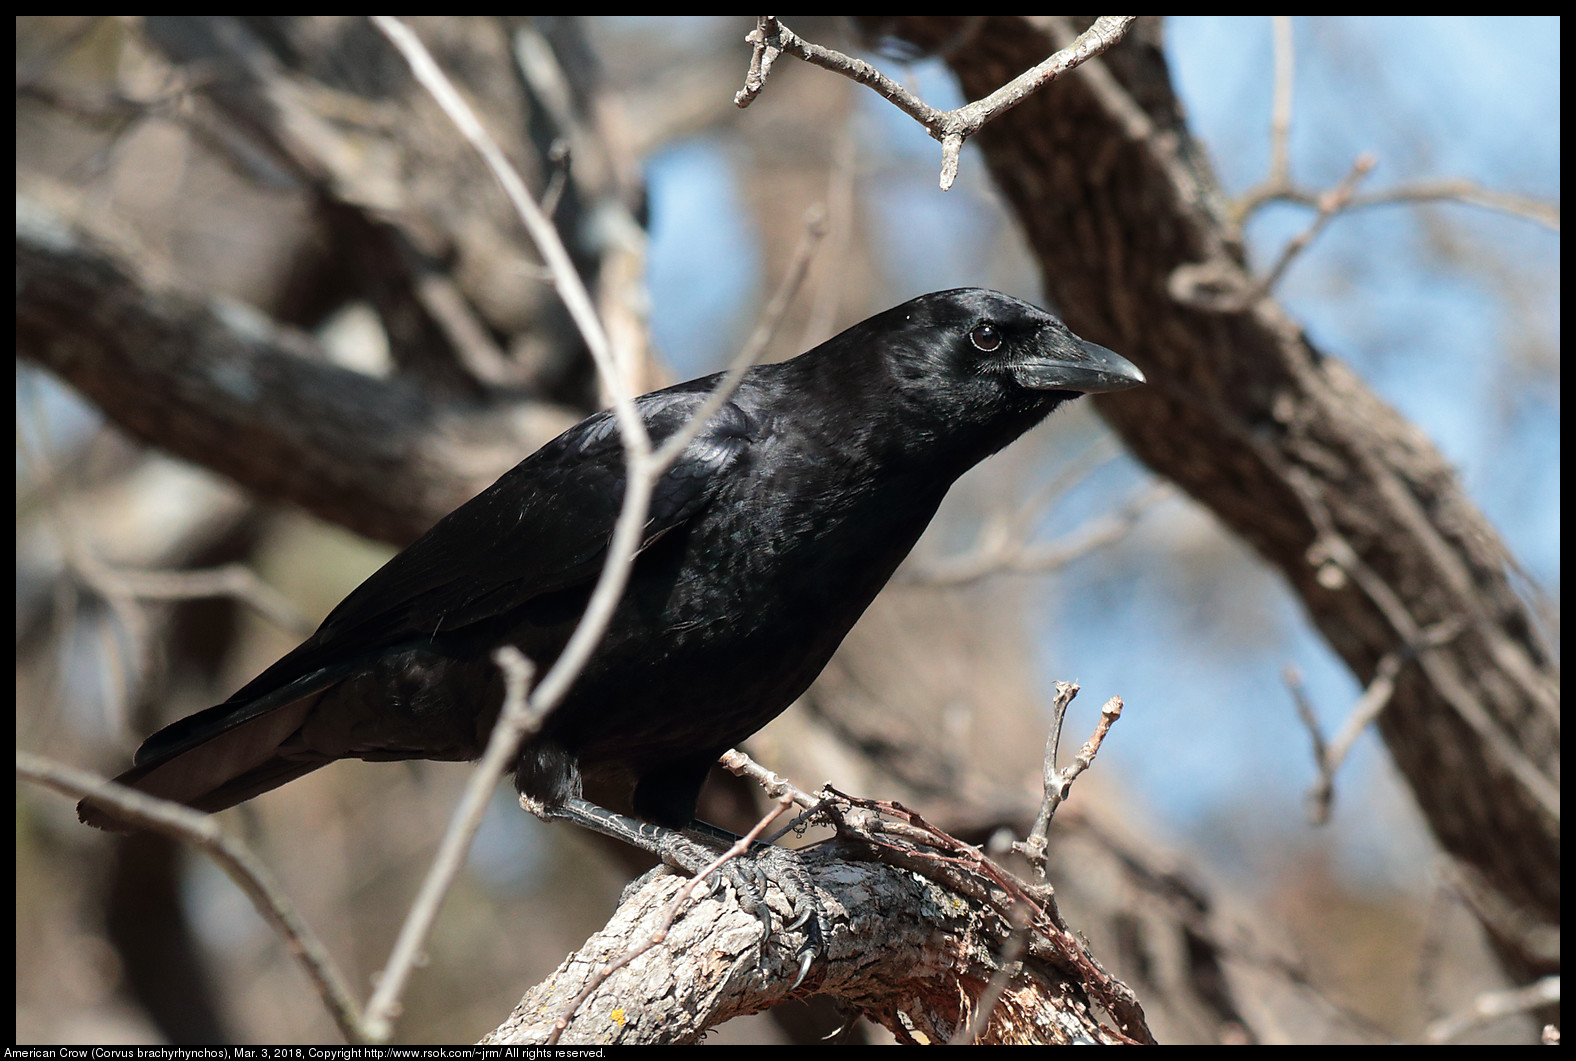 American Crow (Corvus brachyrhynchos), Mar. 3, 2018